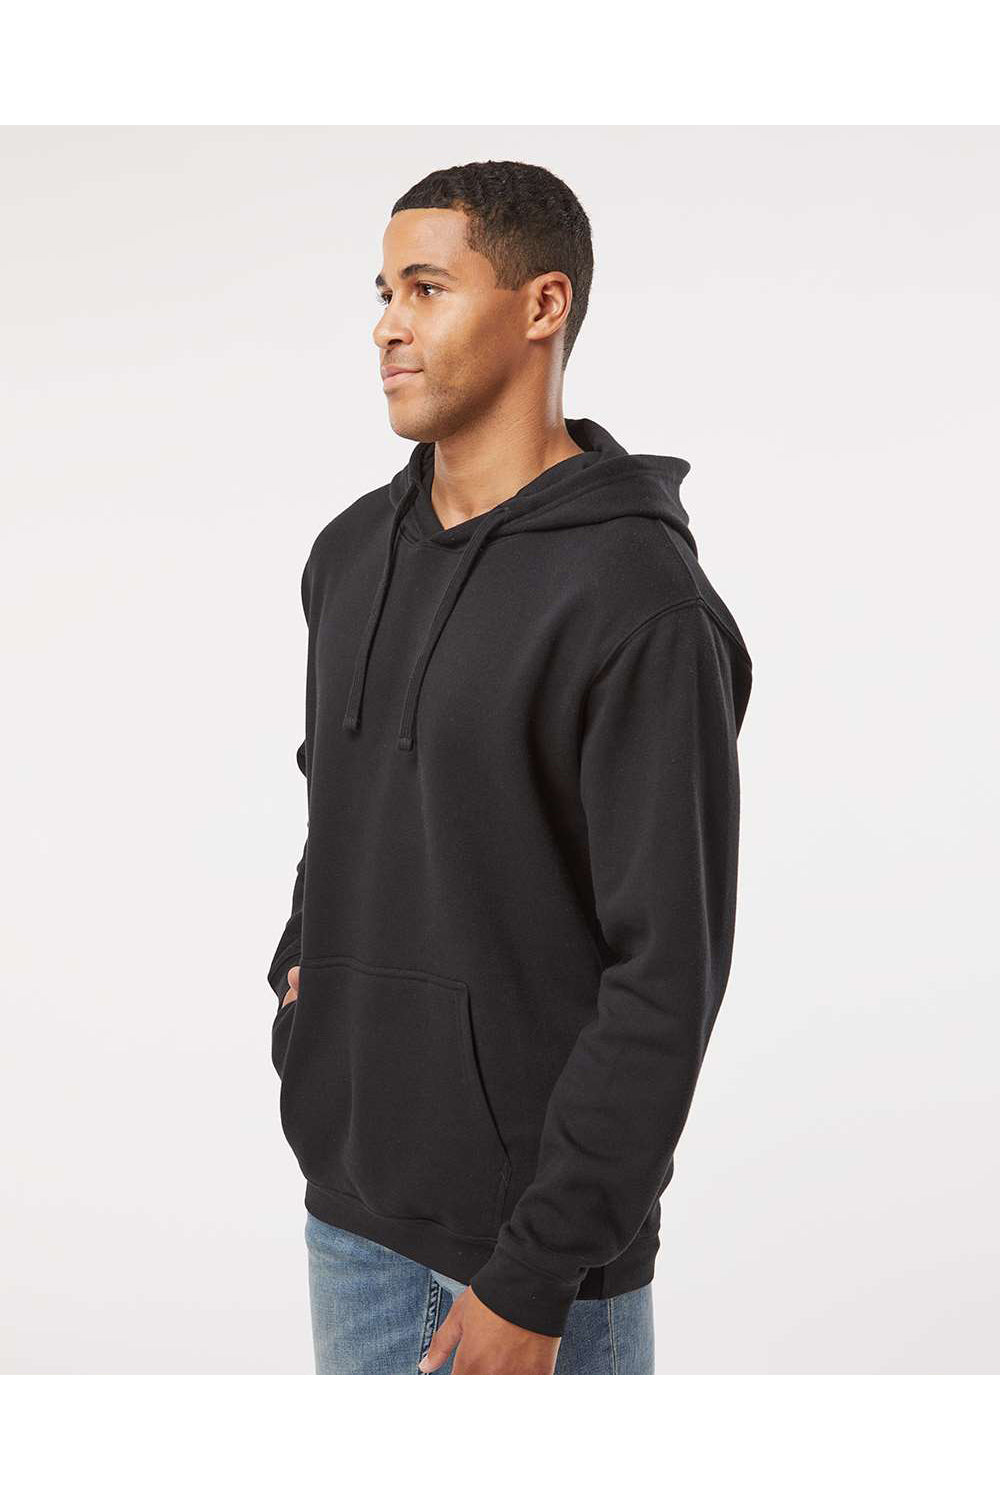 LAT 6926 Mens Elevated Fleece Basic Hooded Sweatshirt Hoodie Black Model Side